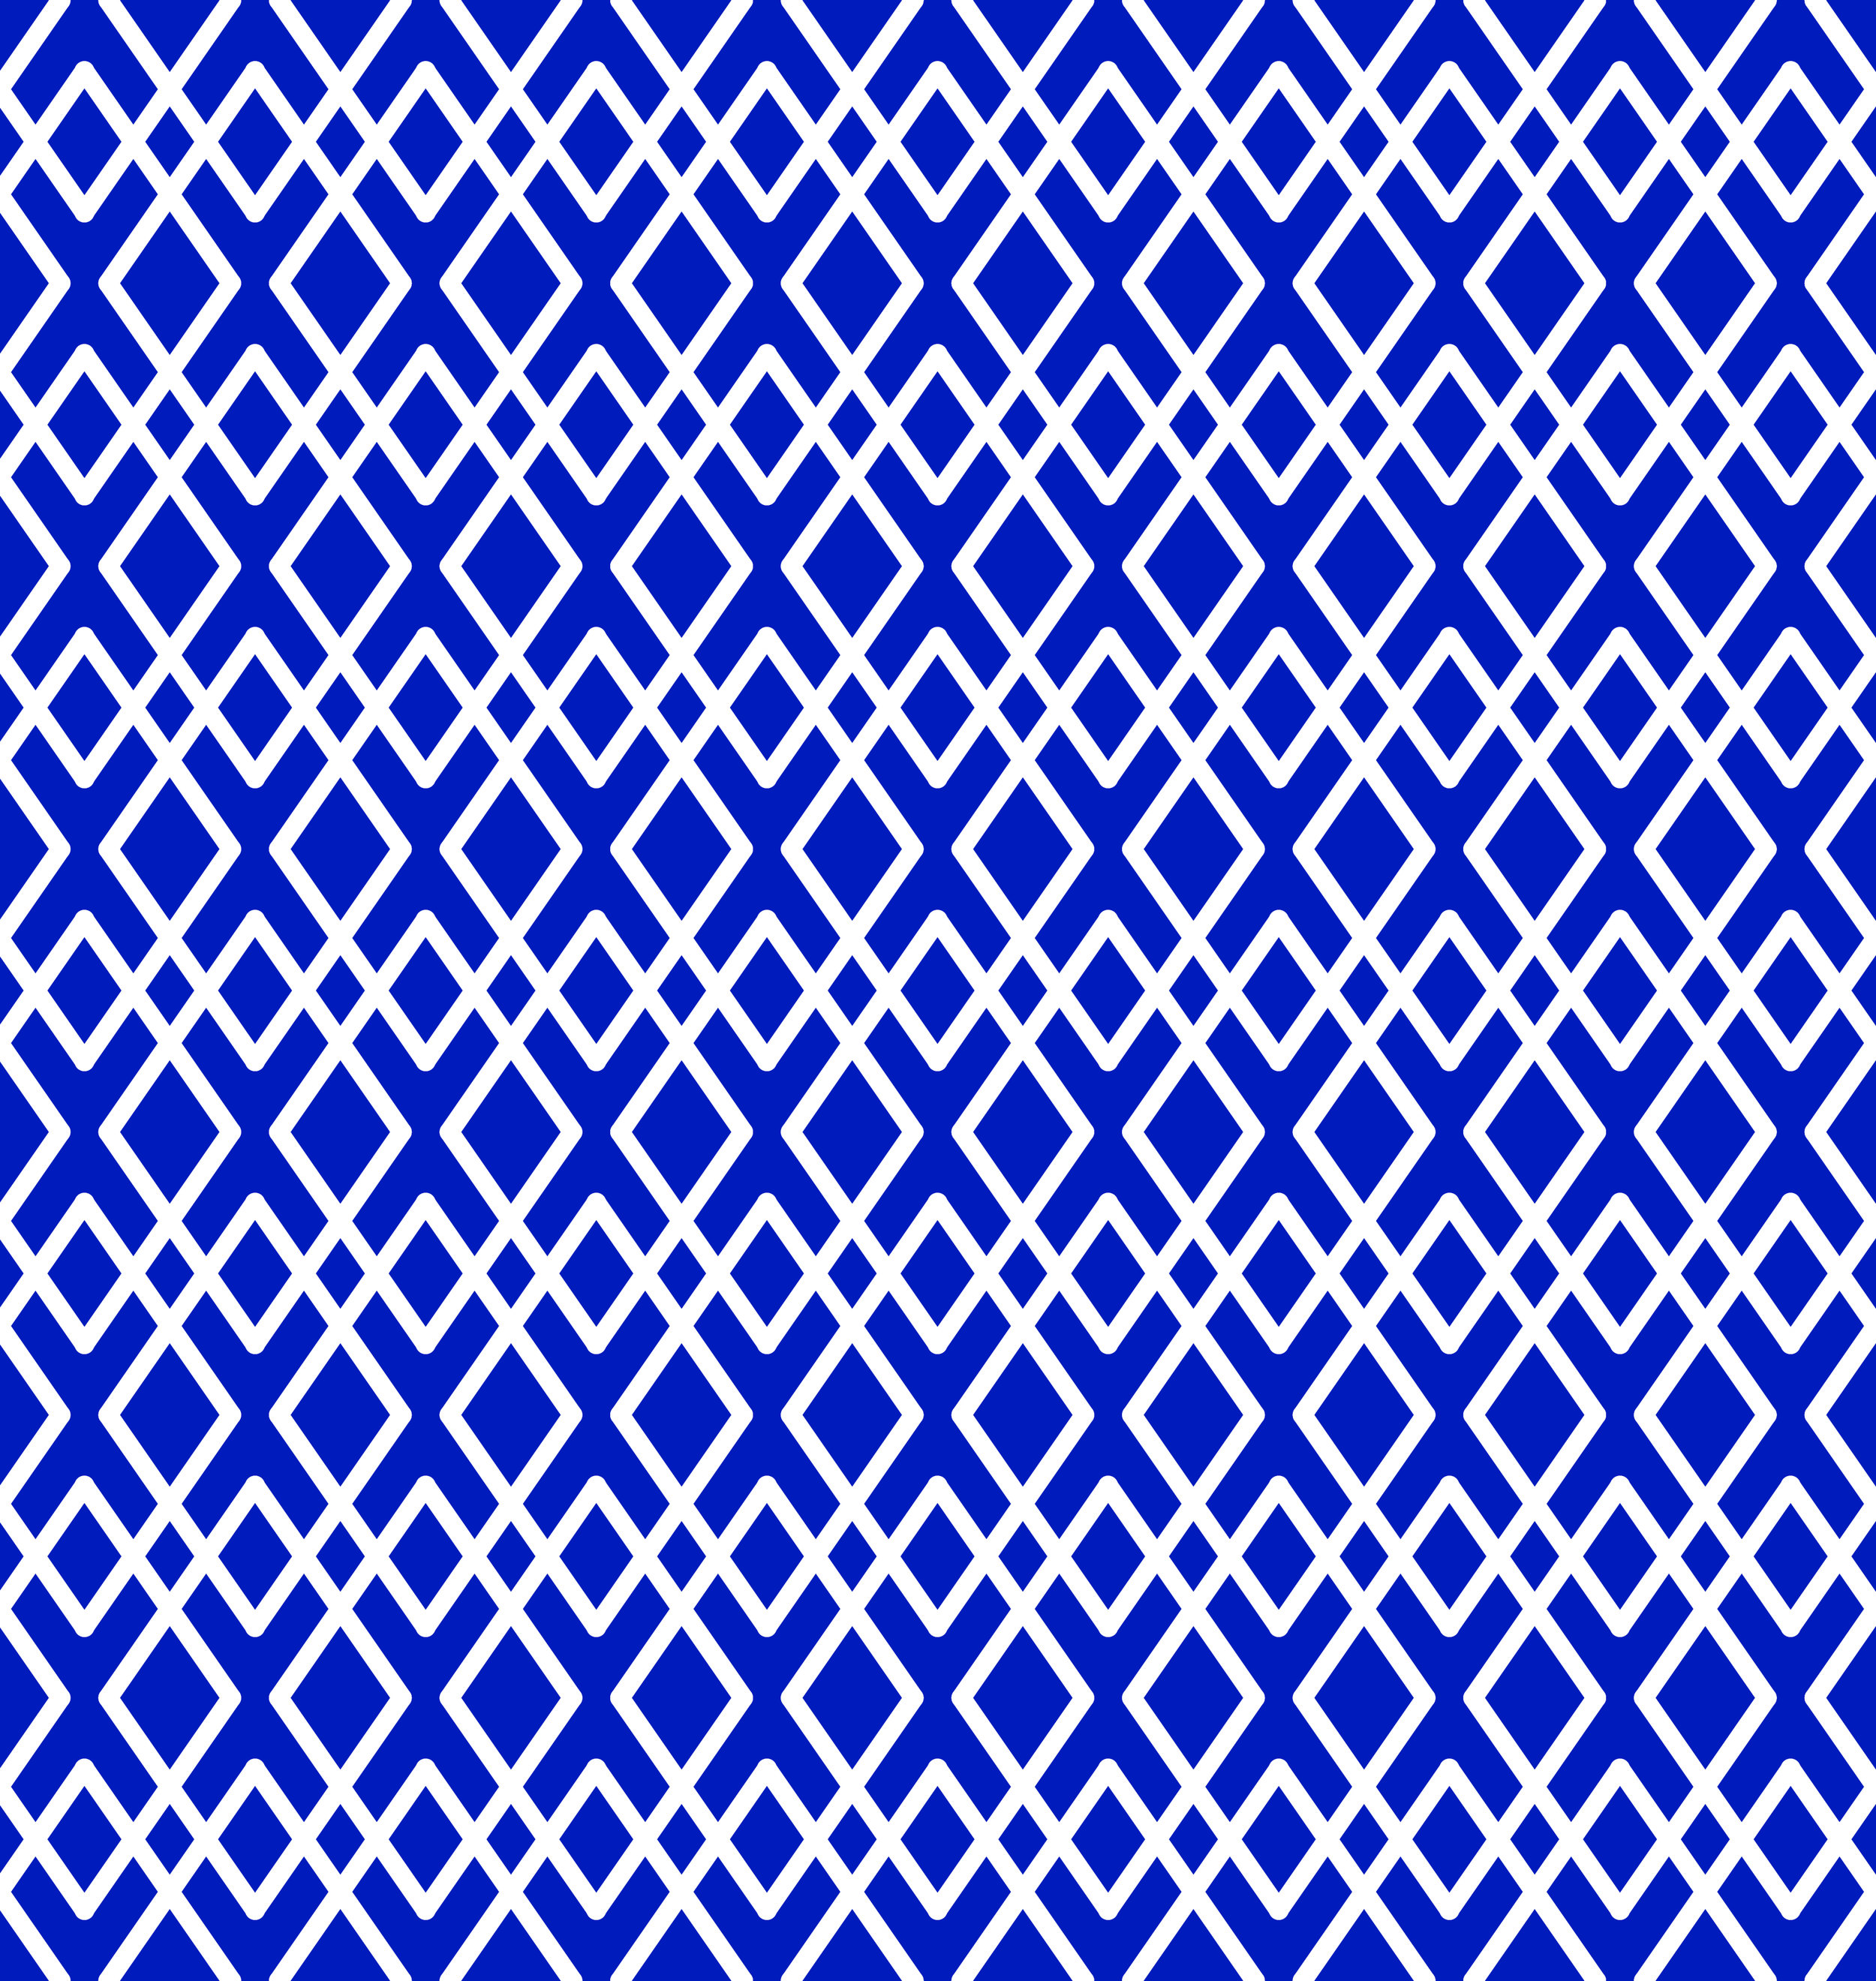 lattice navy and white-01.jpg